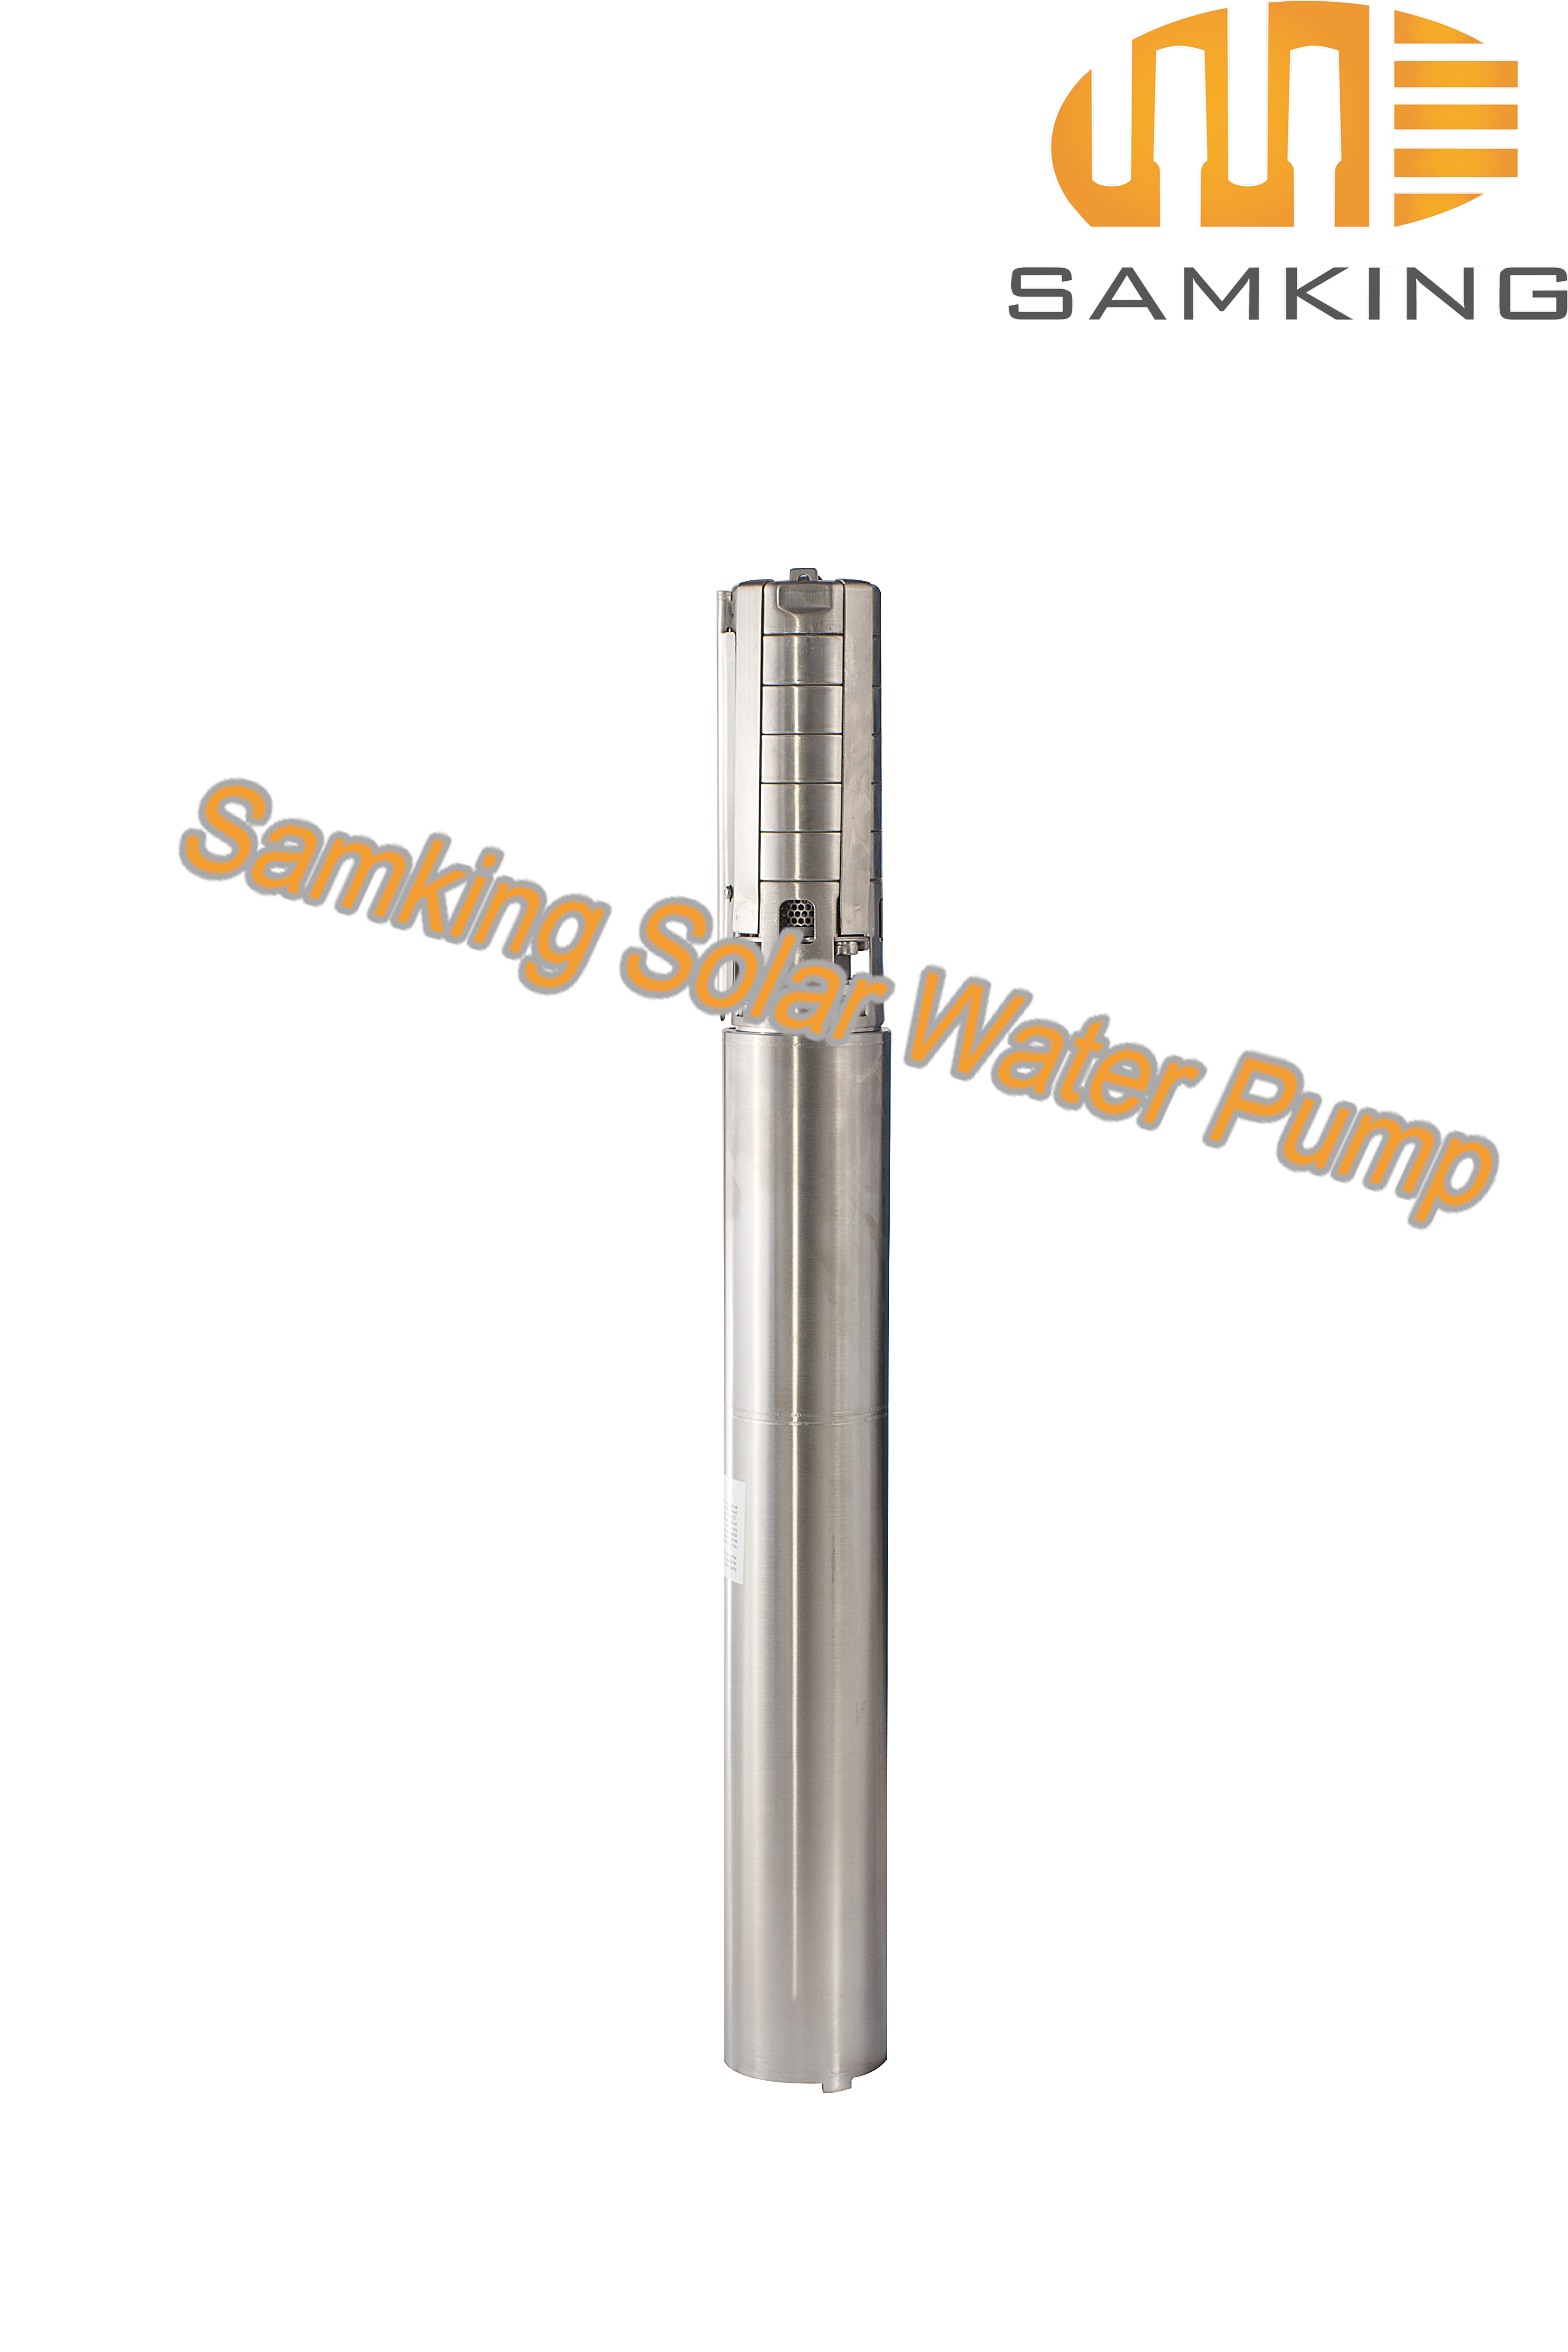 4SP14-4 Samking Solar Water Pump